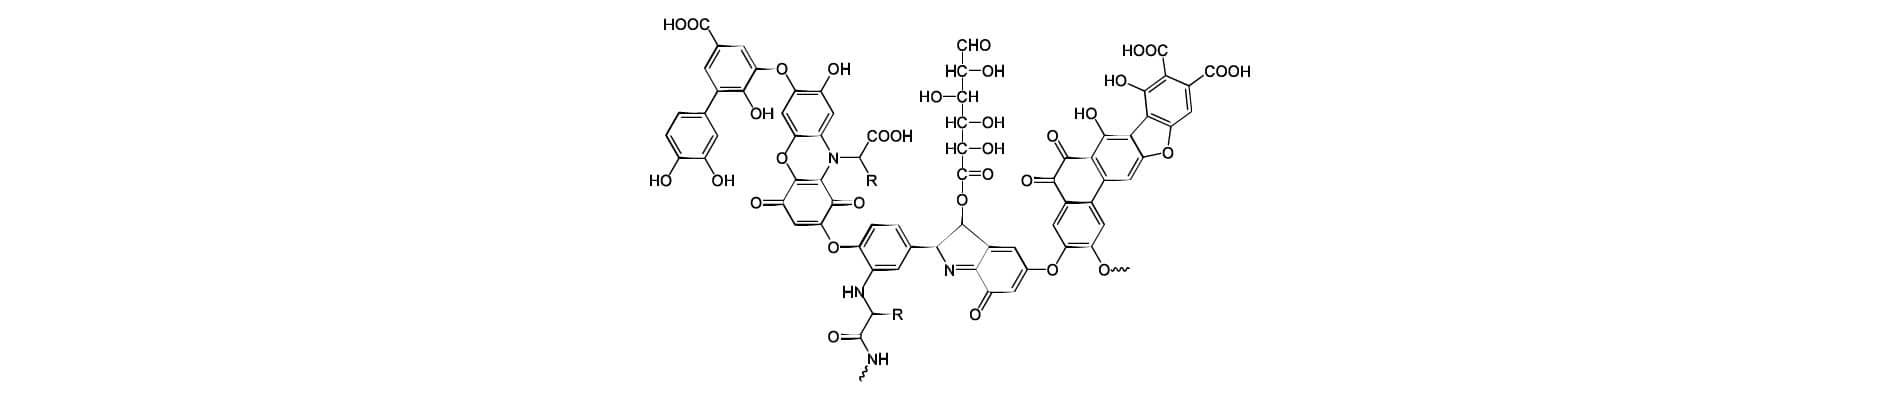 estructura molecular de acidos humicos